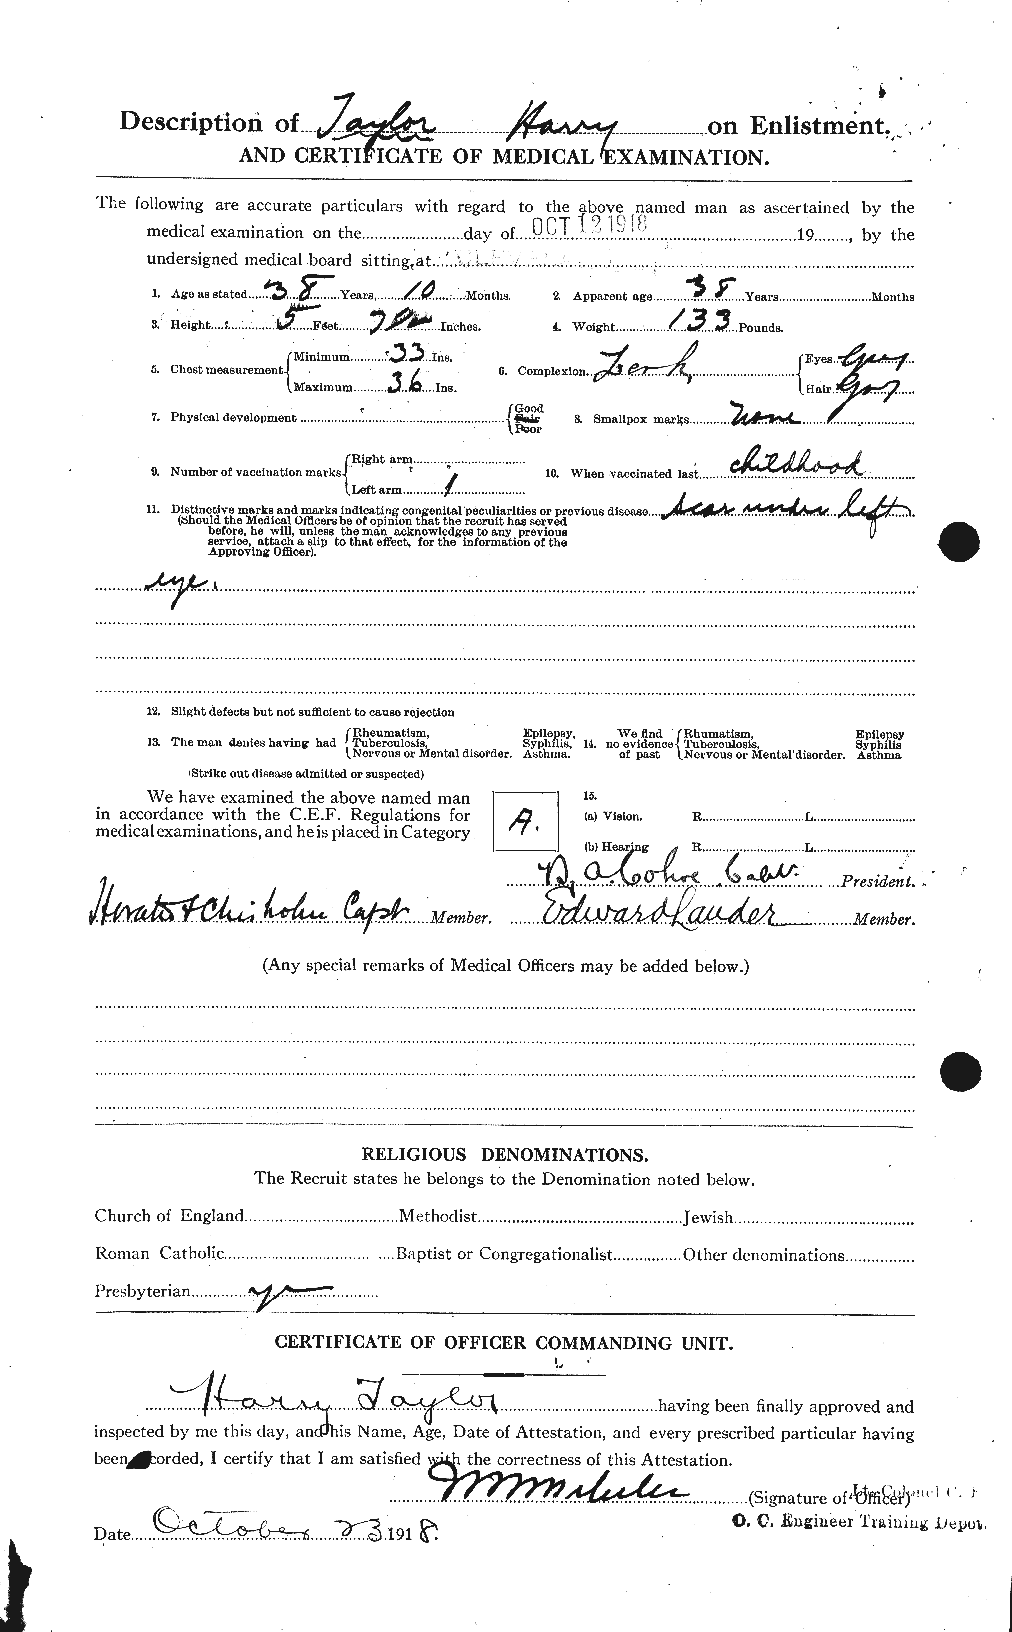 Dossiers du Personnel de la Première Guerre mondiale - CEC 626454b